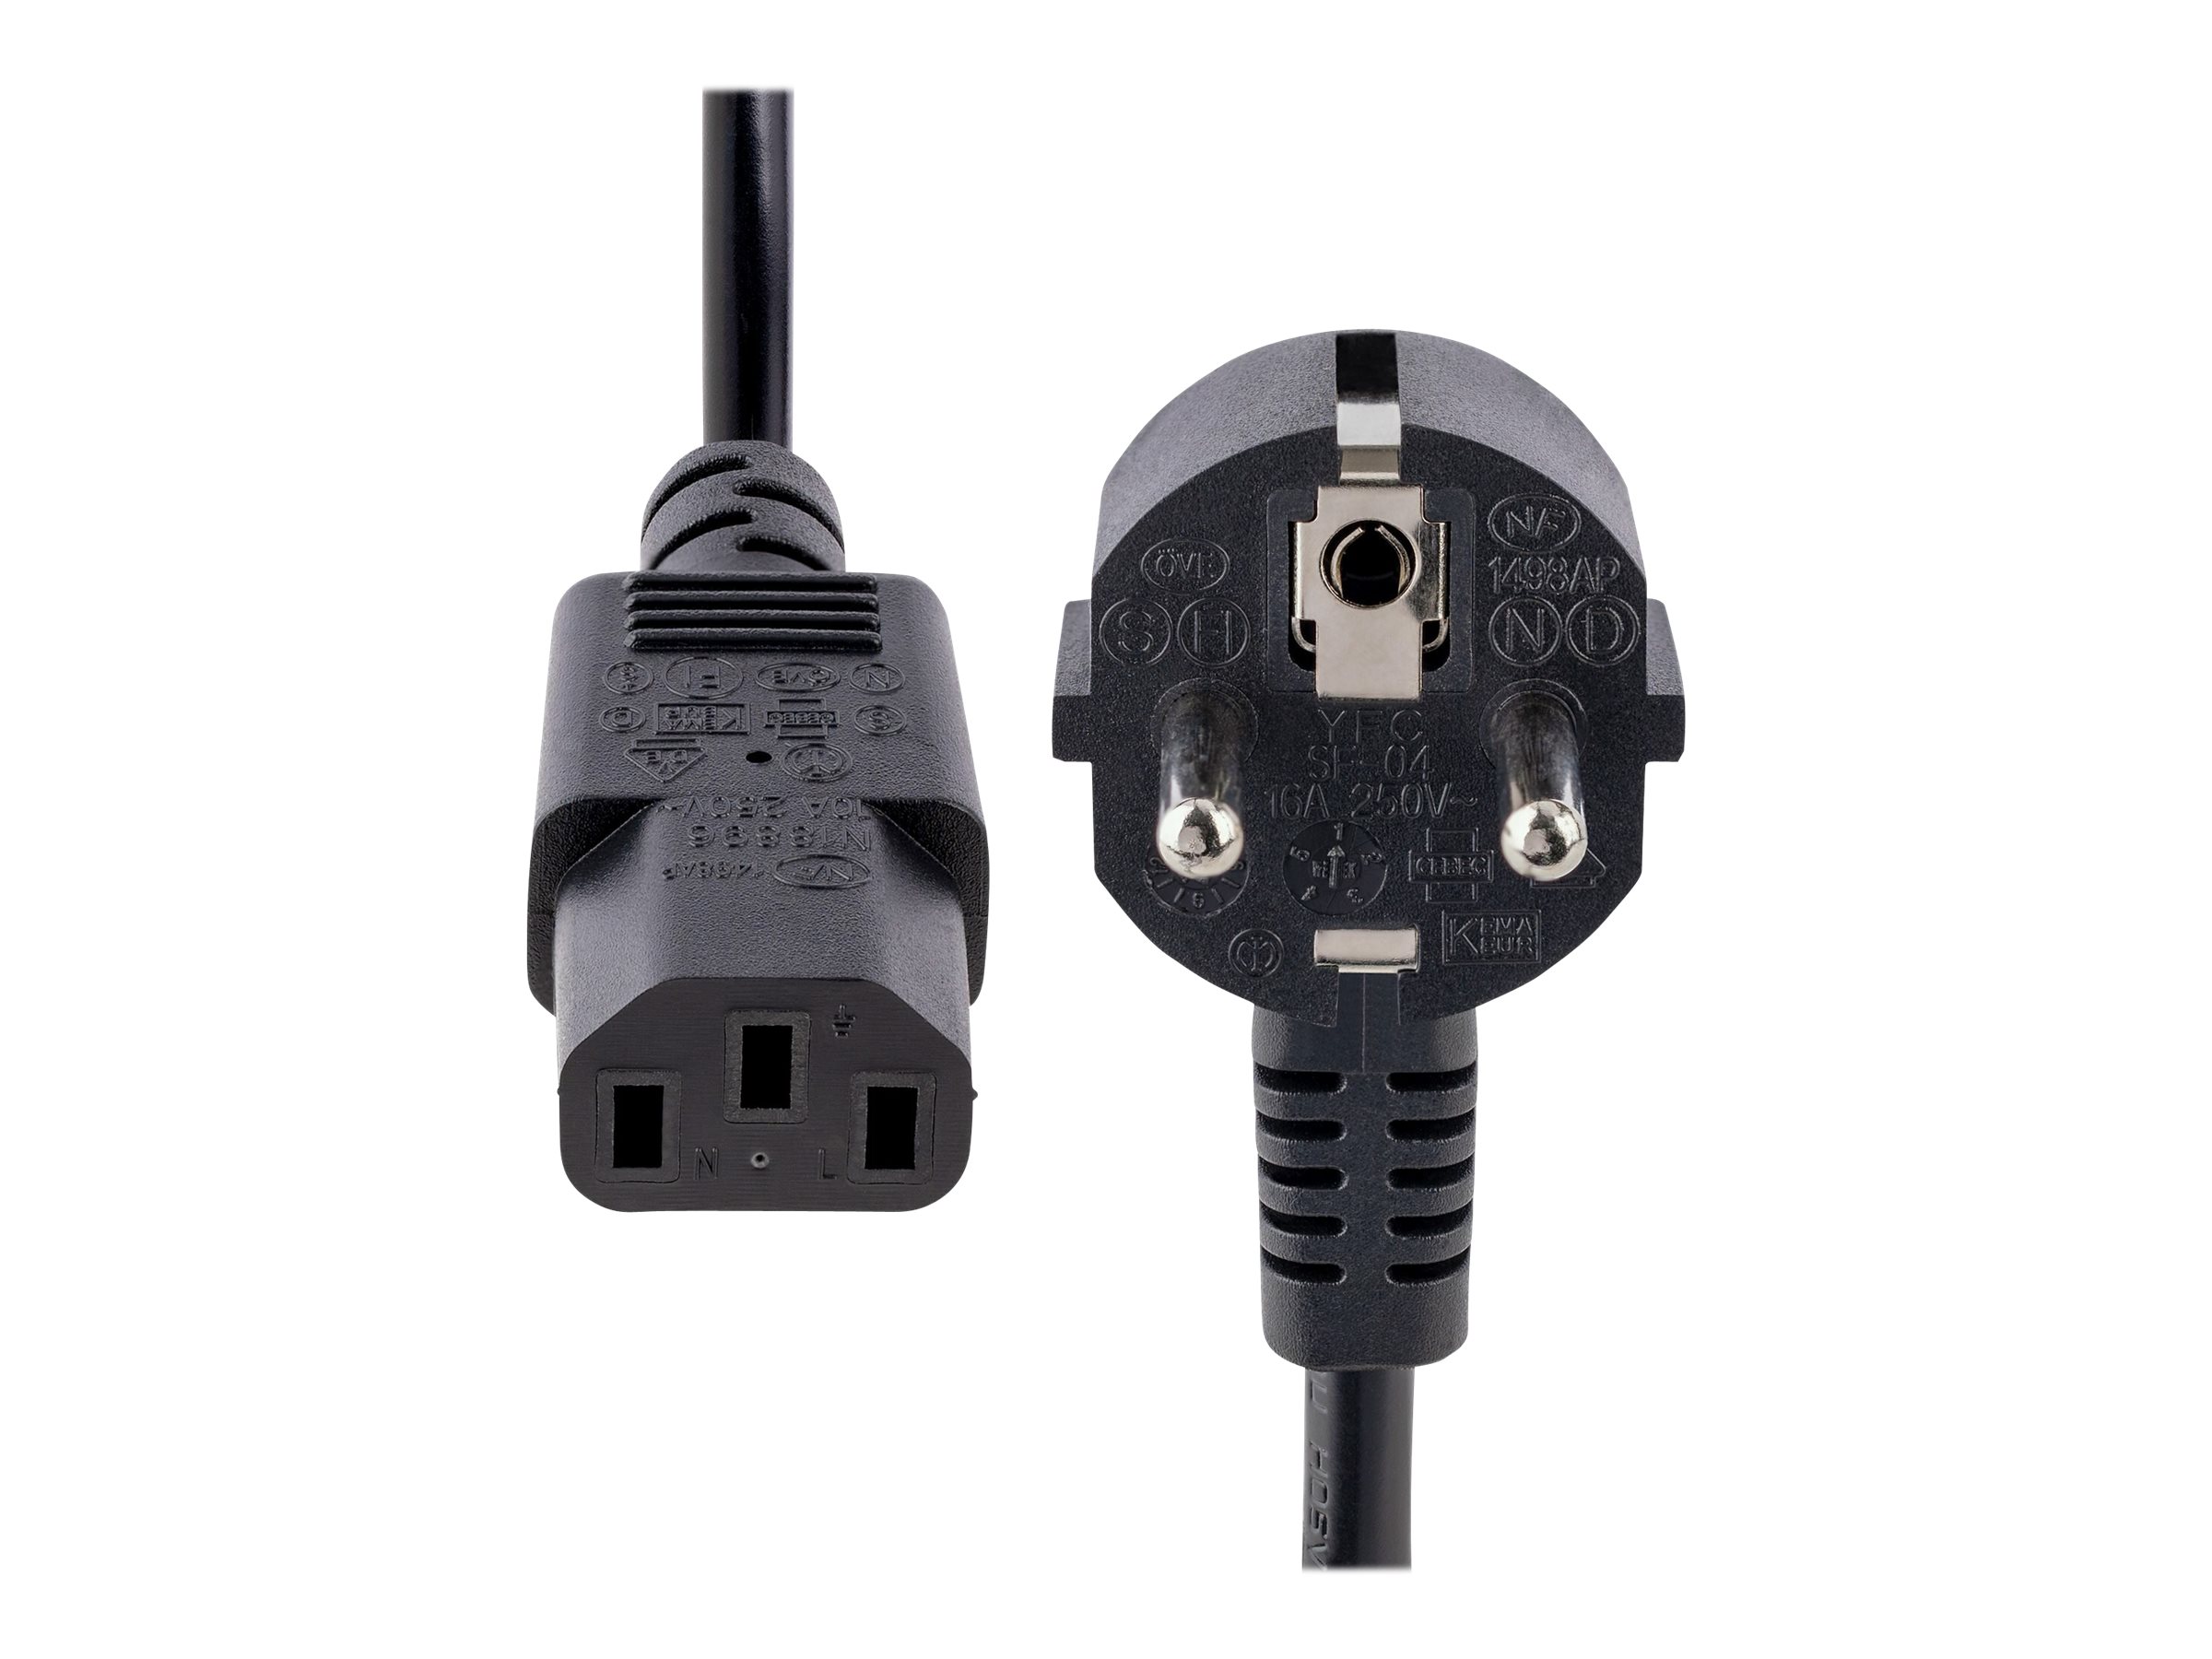 Câble d'alimentation électrique IEC-60320 C13 coudé à Schuko mâle